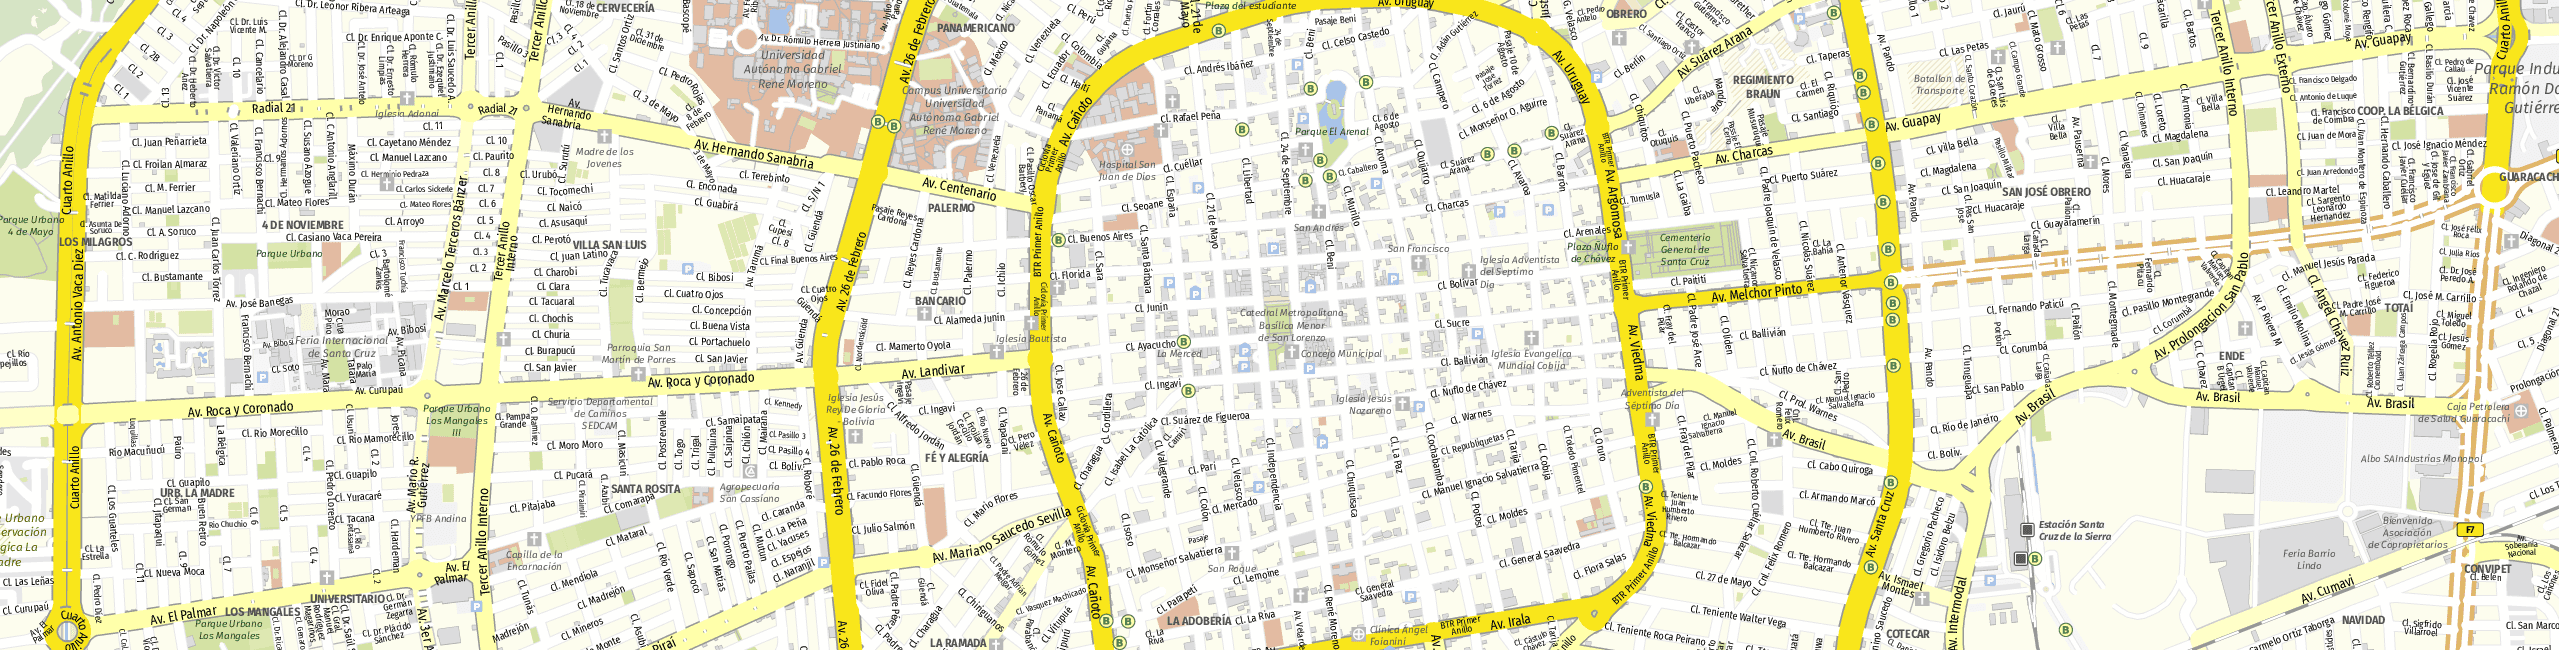 Stadtplan Santa Cruz de la Sierra zum Downloaden.